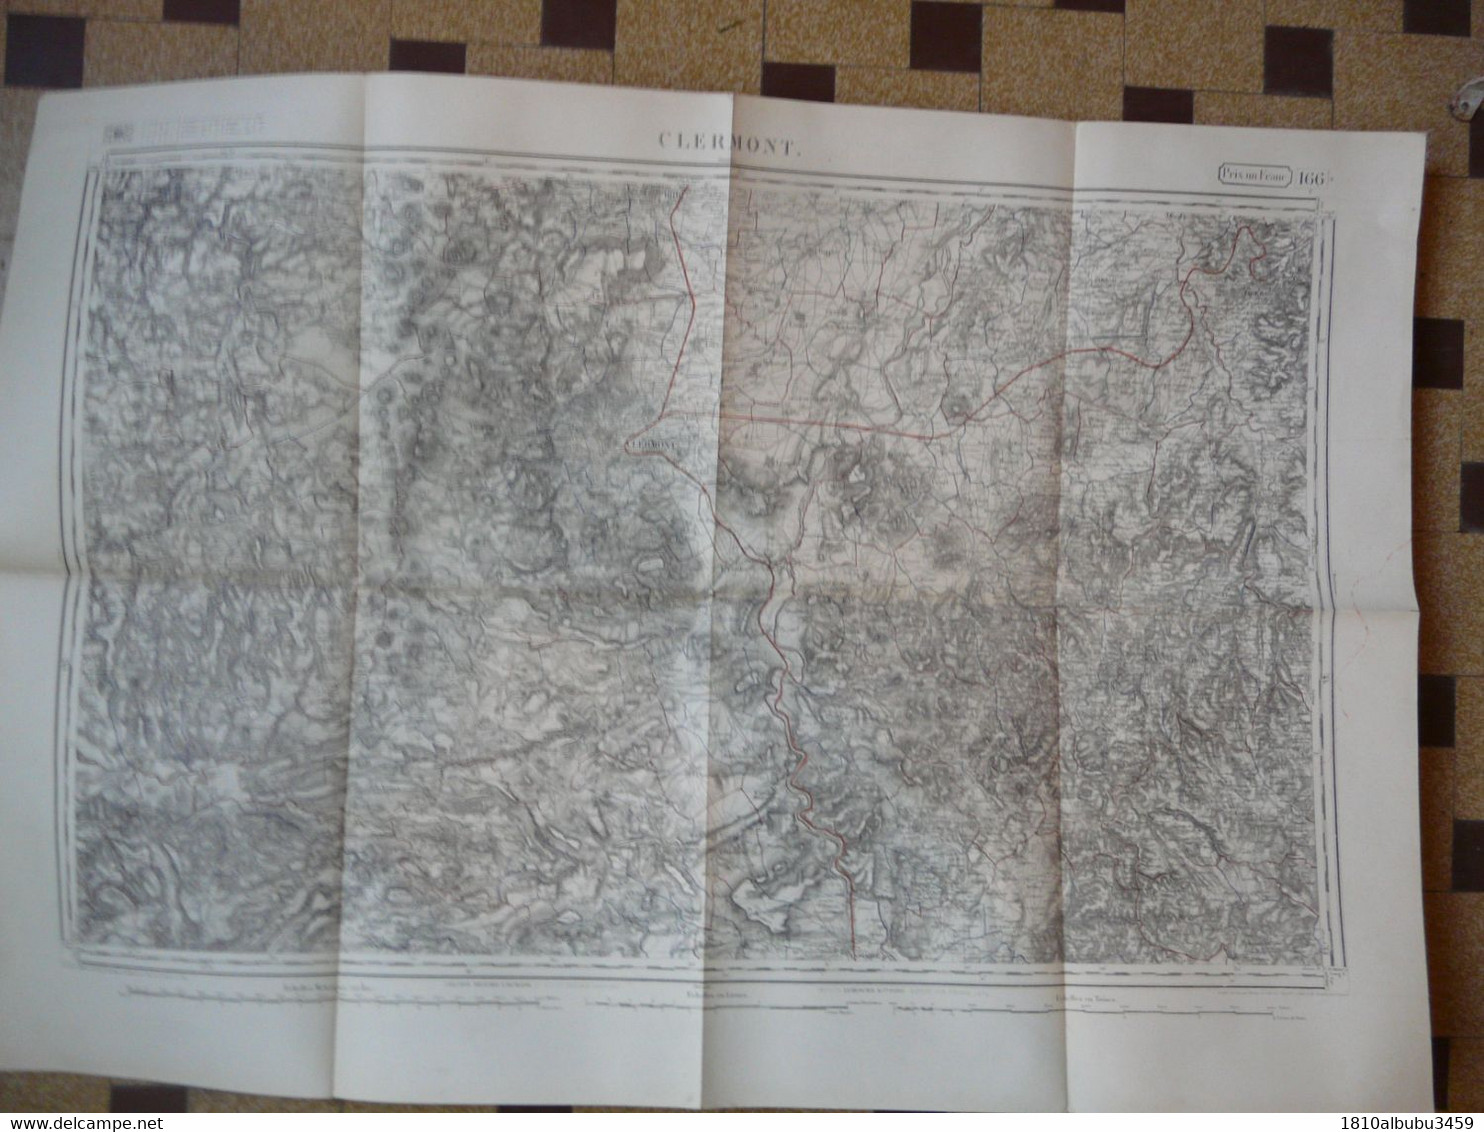 CARTE TOPOGRAPHIQUE CLERMONT-FERRAND : Ech. 1/80000 - Levée Par Les Officiers D'Etat Major En 1854  ( 92 X 64 Cm) - Cartes Topographiques